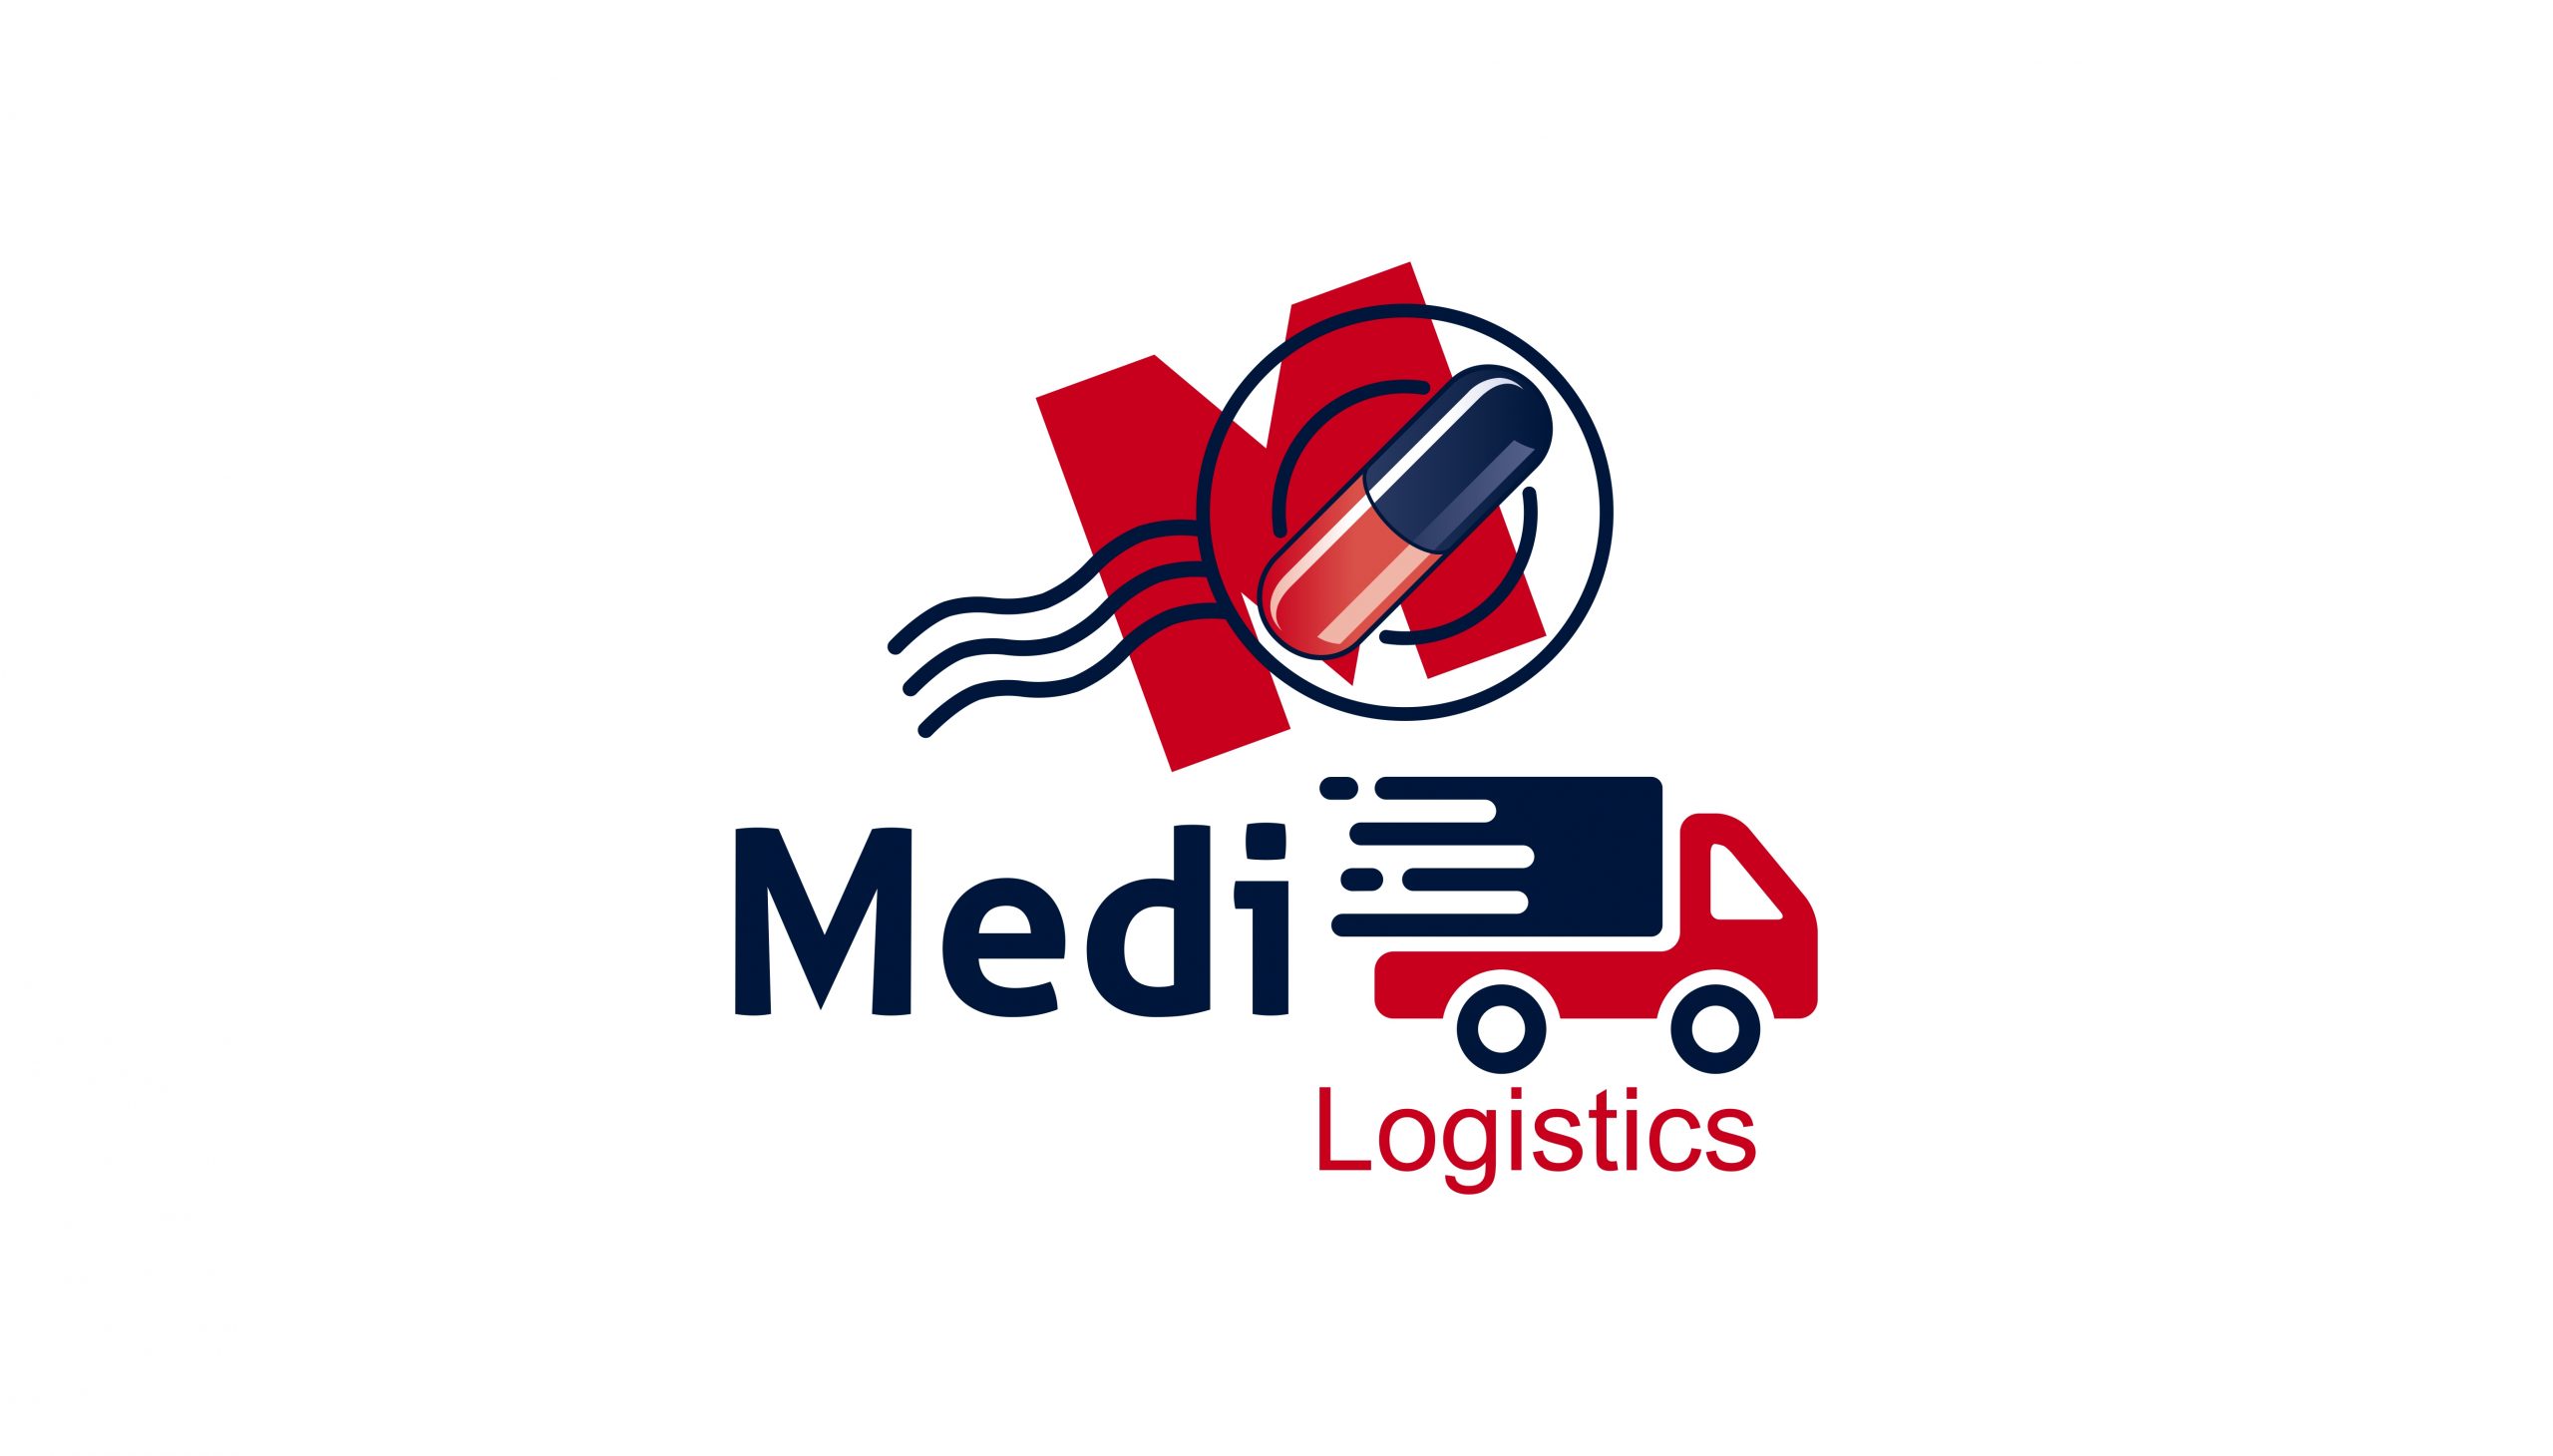 Medi logistics